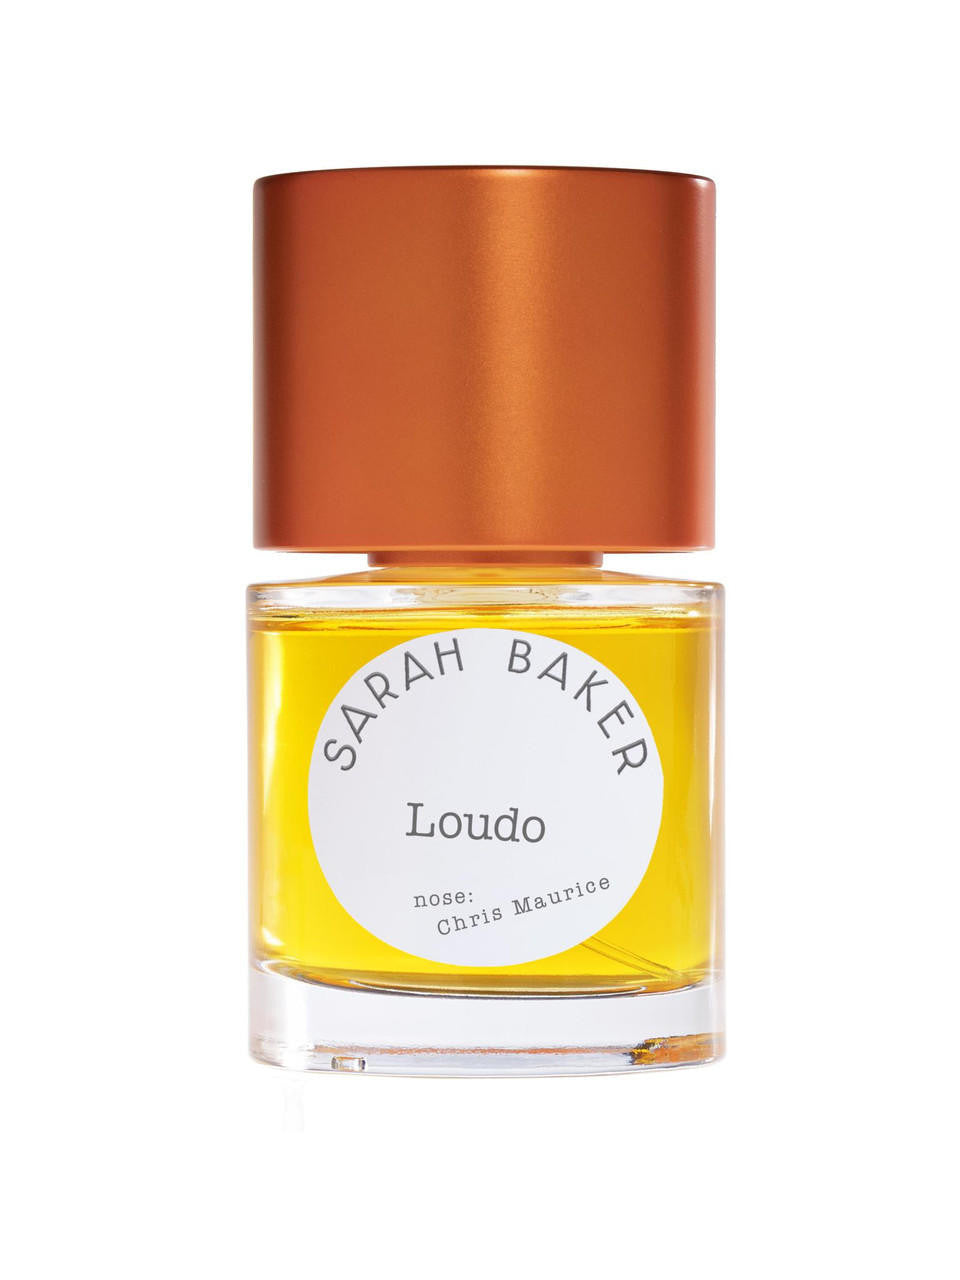  Sarah Baker Loudo Extrait de Parfum 